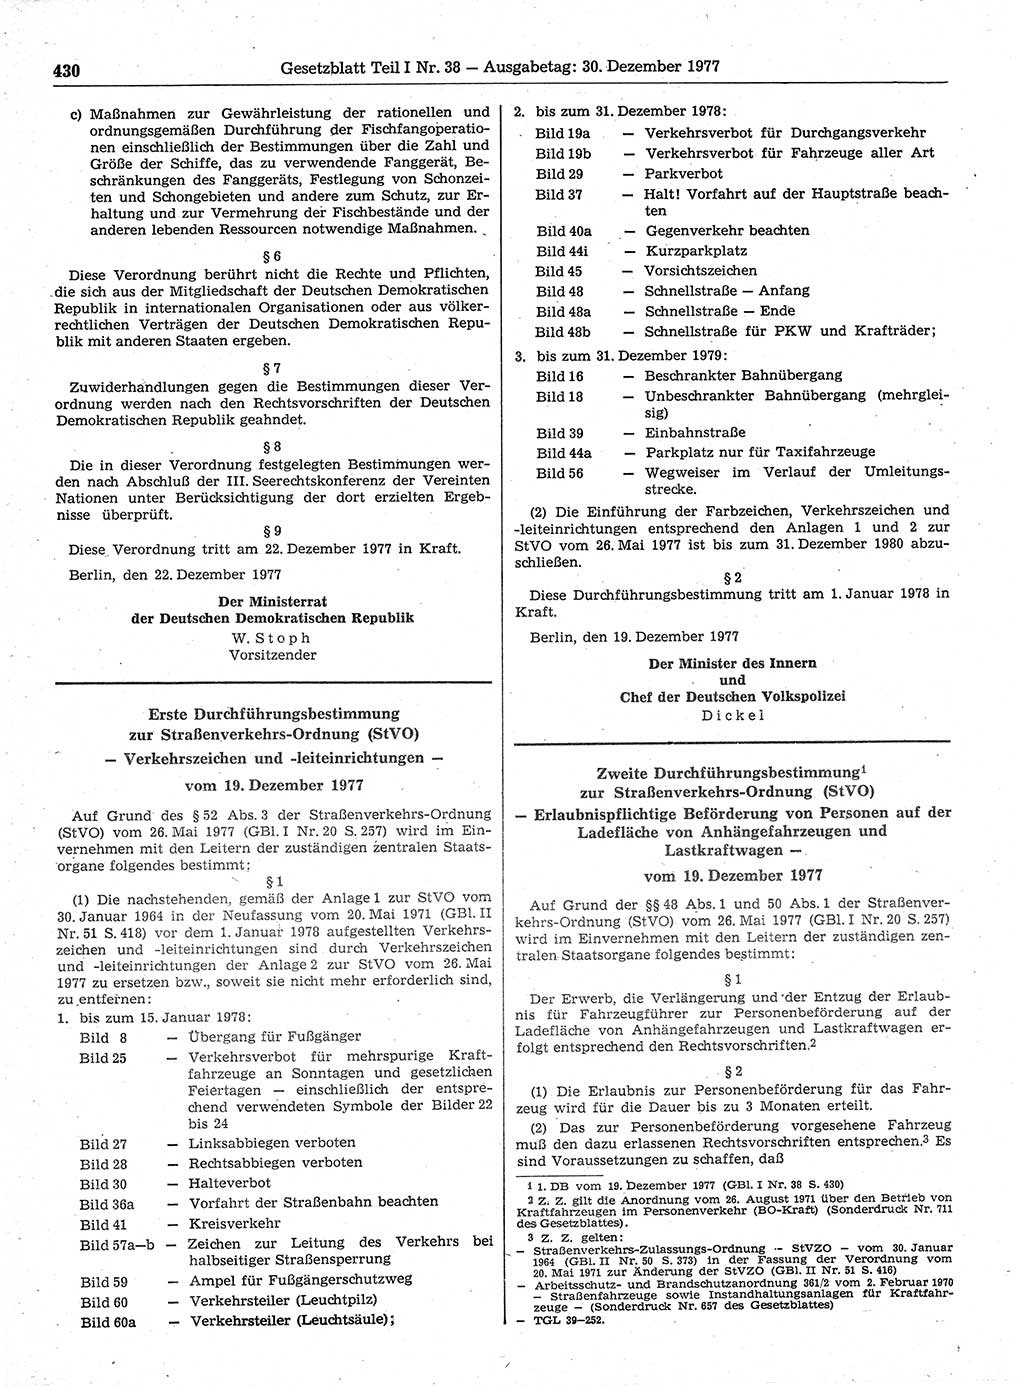 Gesetzblatt (GBl.) der Deutschen Demokratischen Republik (DDR) Teil Ⅰ 1977, Seite 430 (GBl. DDR Ⅰ 1977, S. 430)